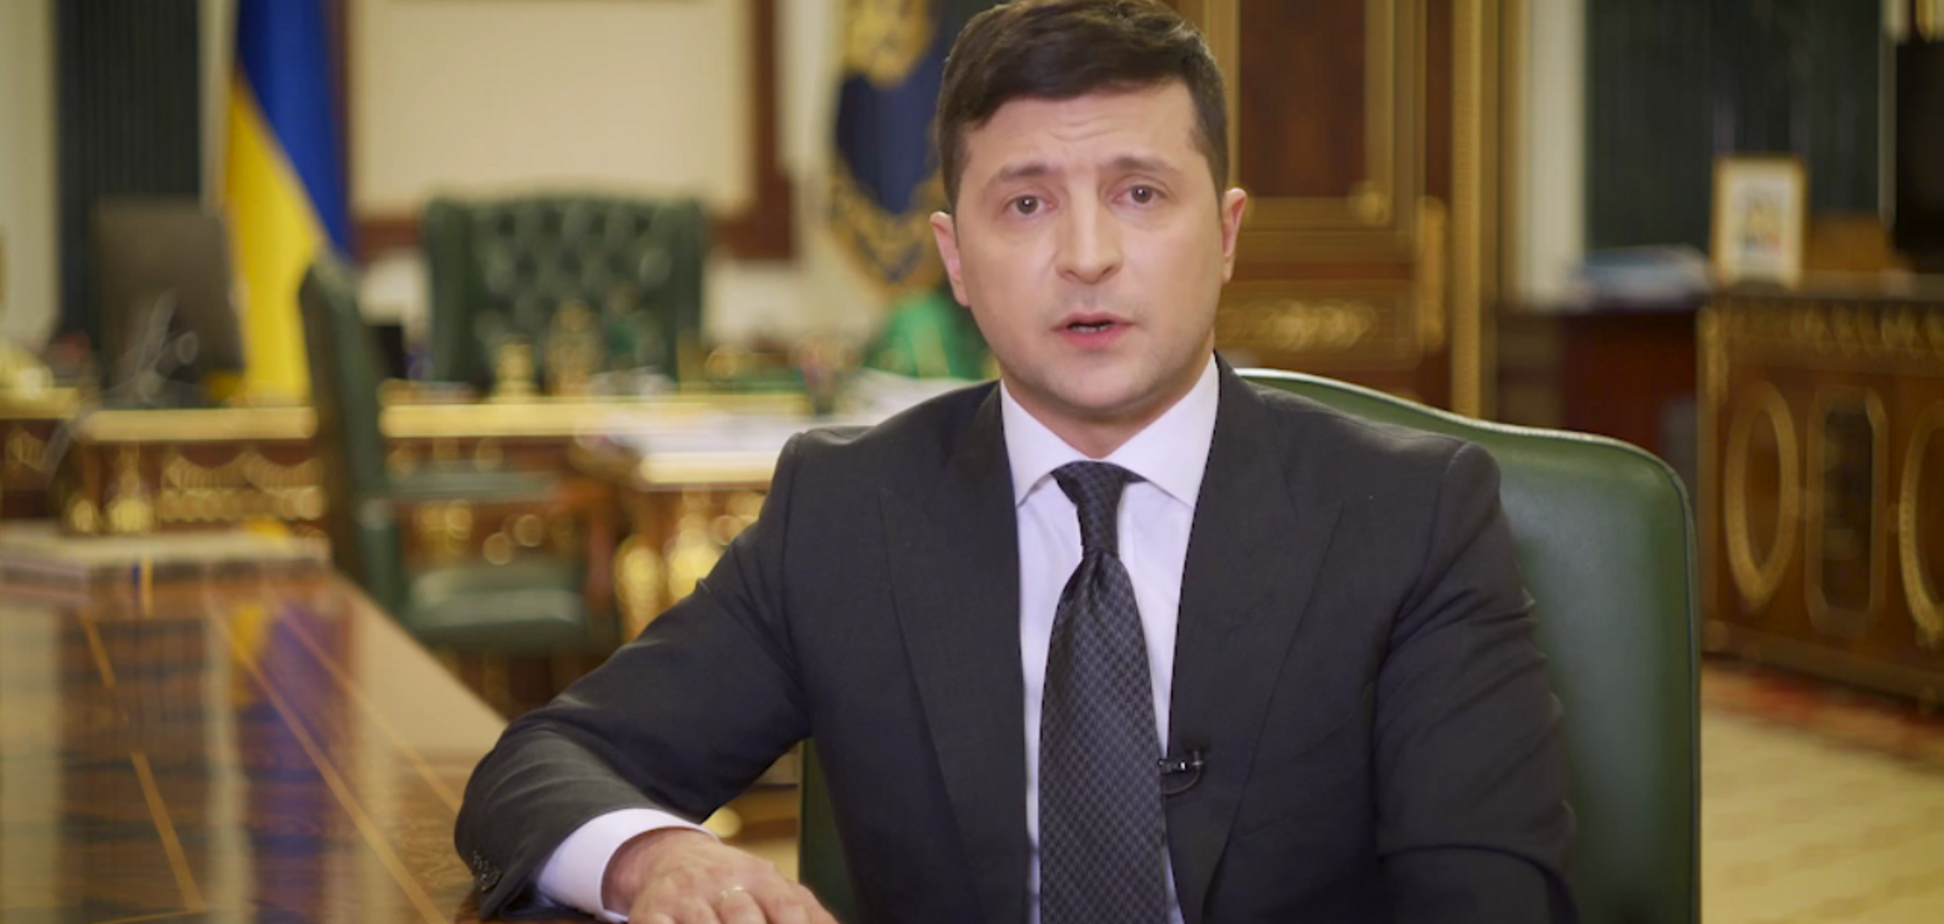 Зеленский выступил с новым обращением к украинцам. Видео